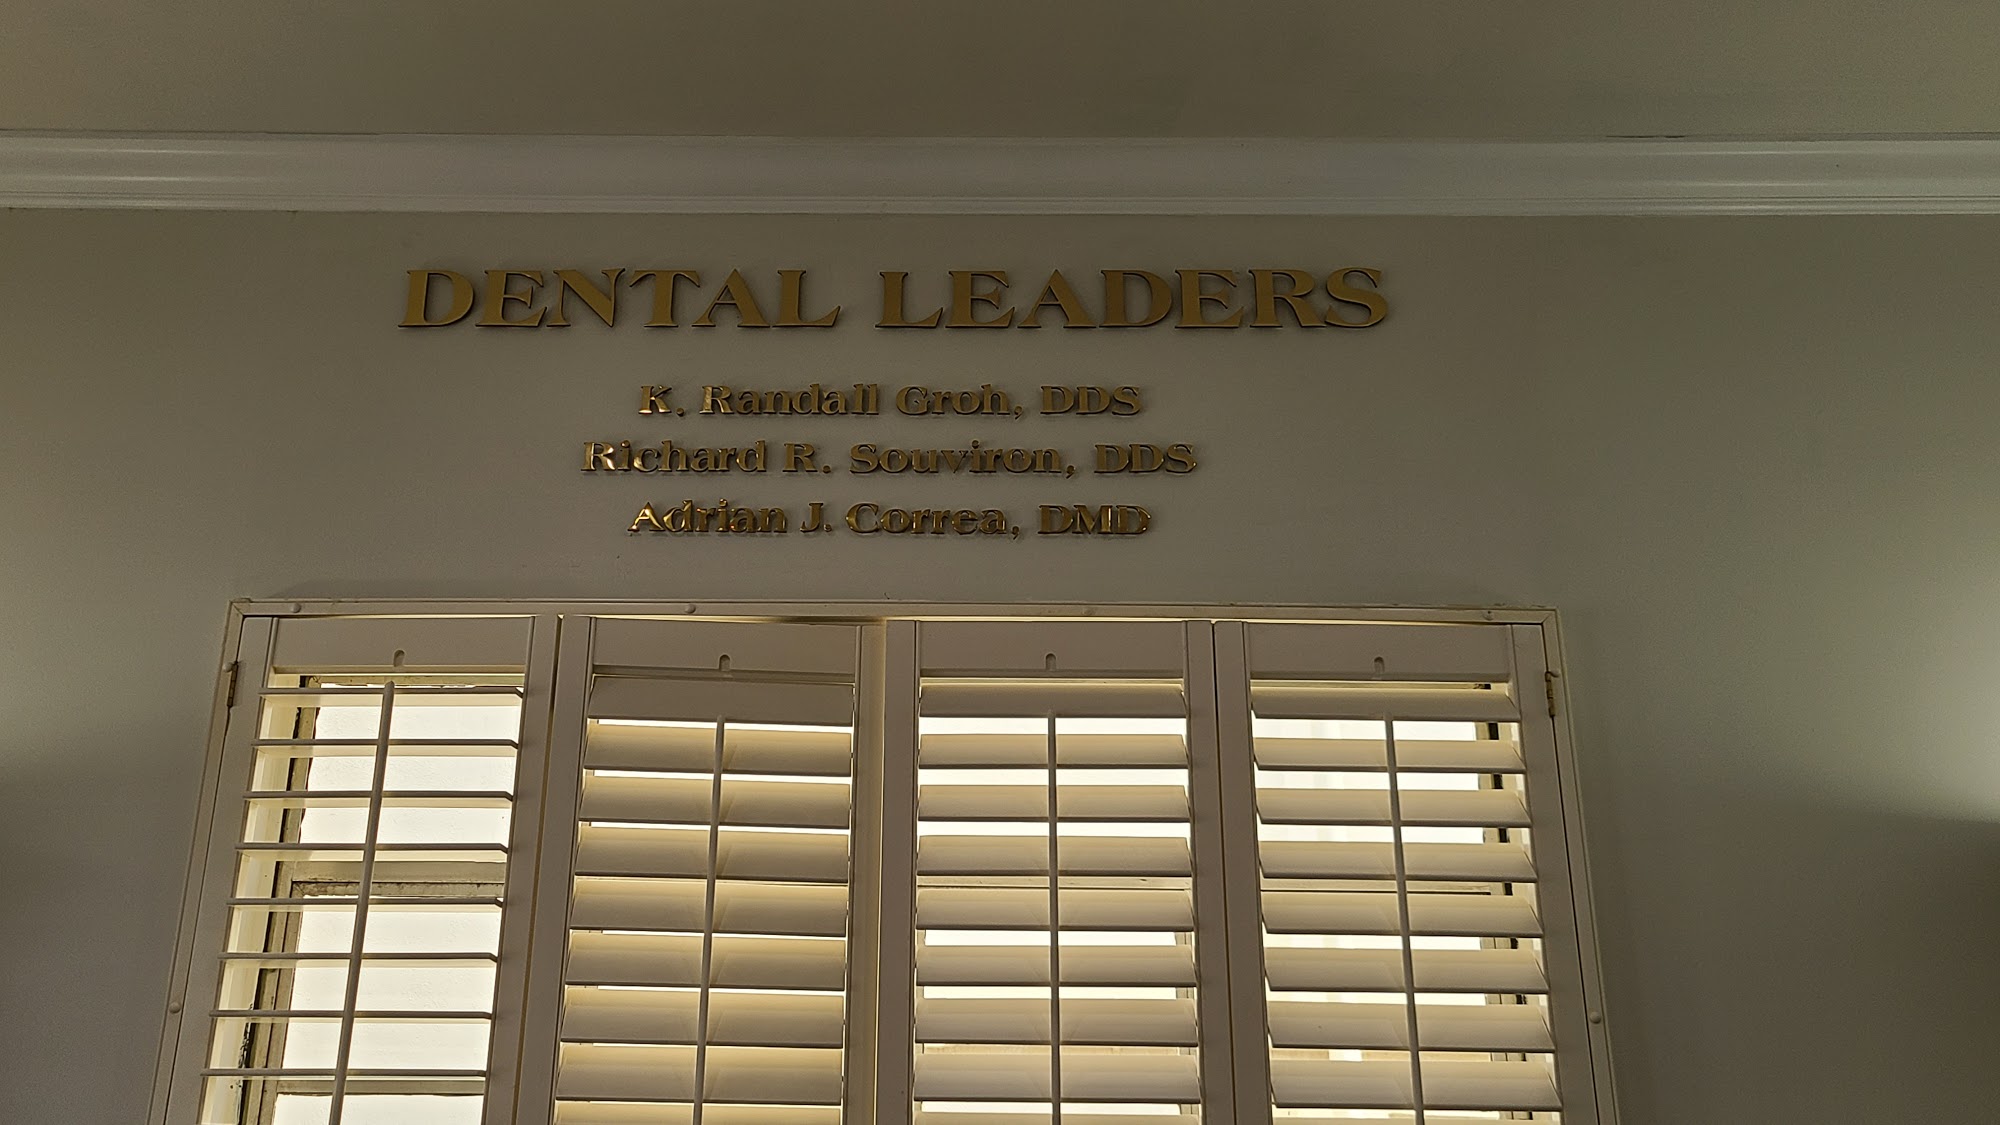 Dental Leaders